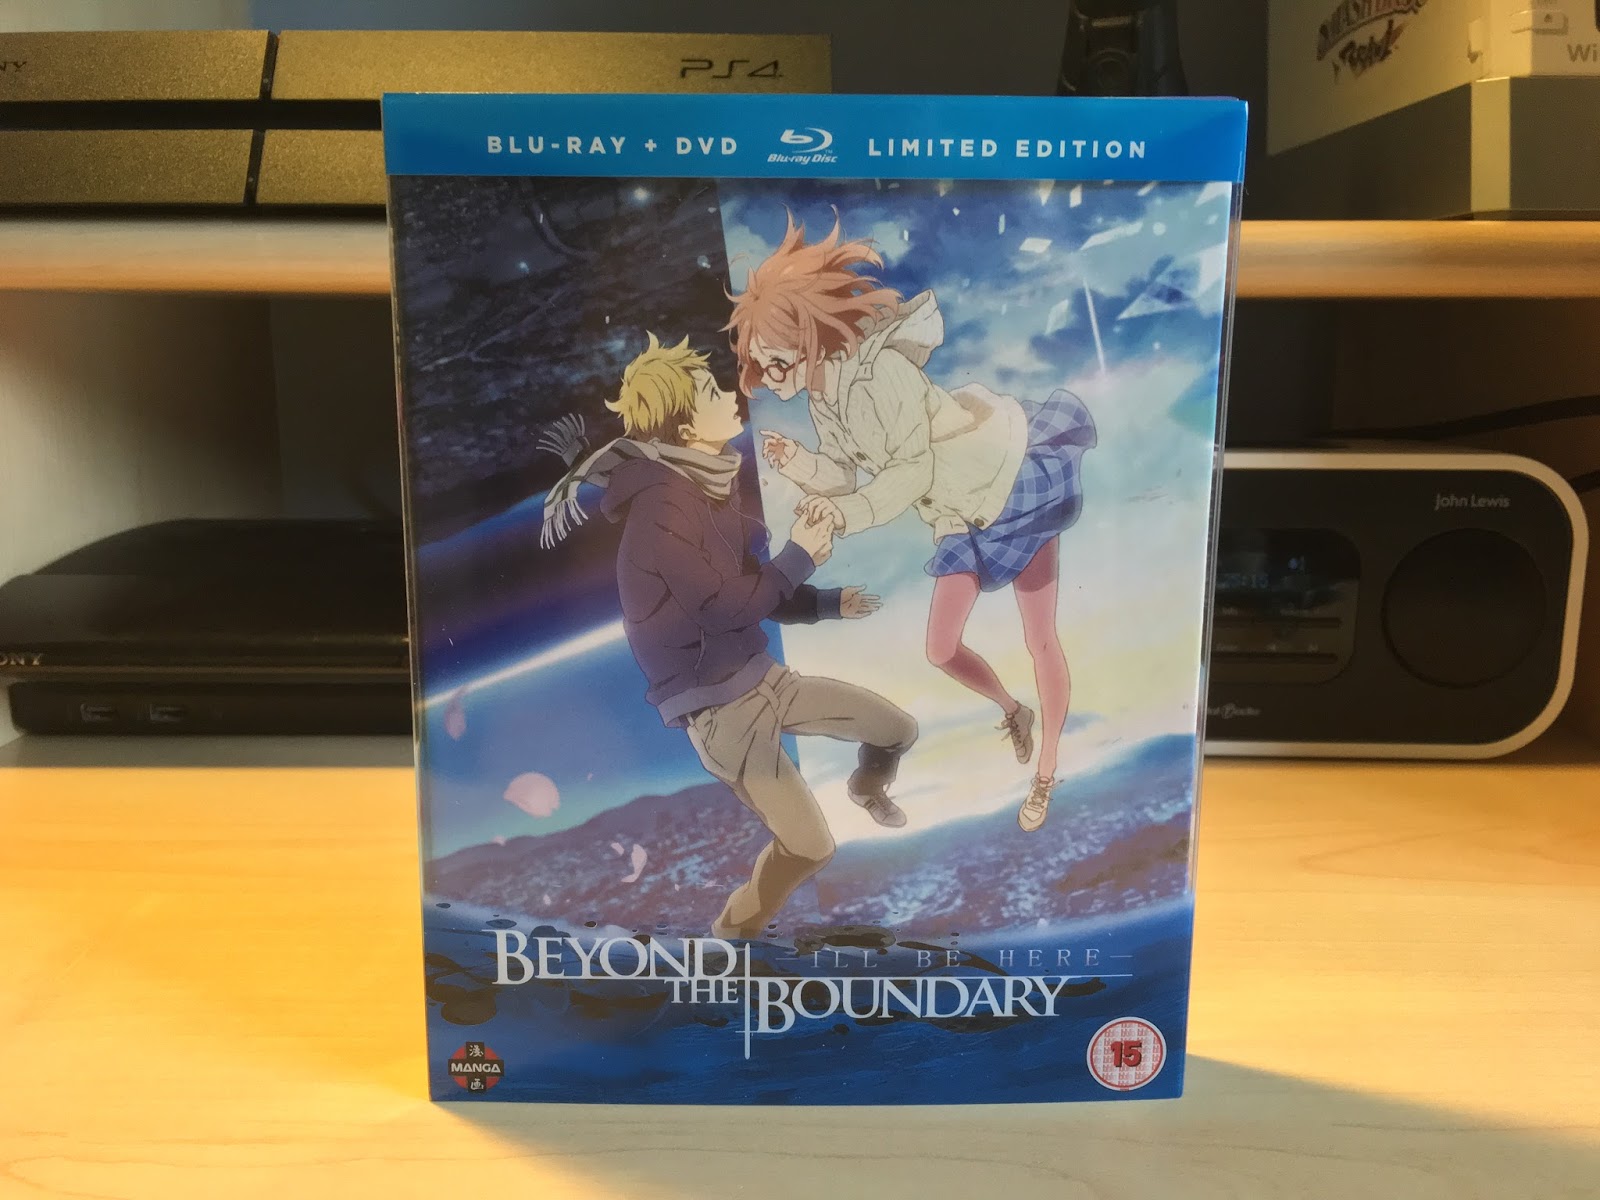 Beyond The Boundary - Complete Season Collection Blu-ray - Zavvi UK